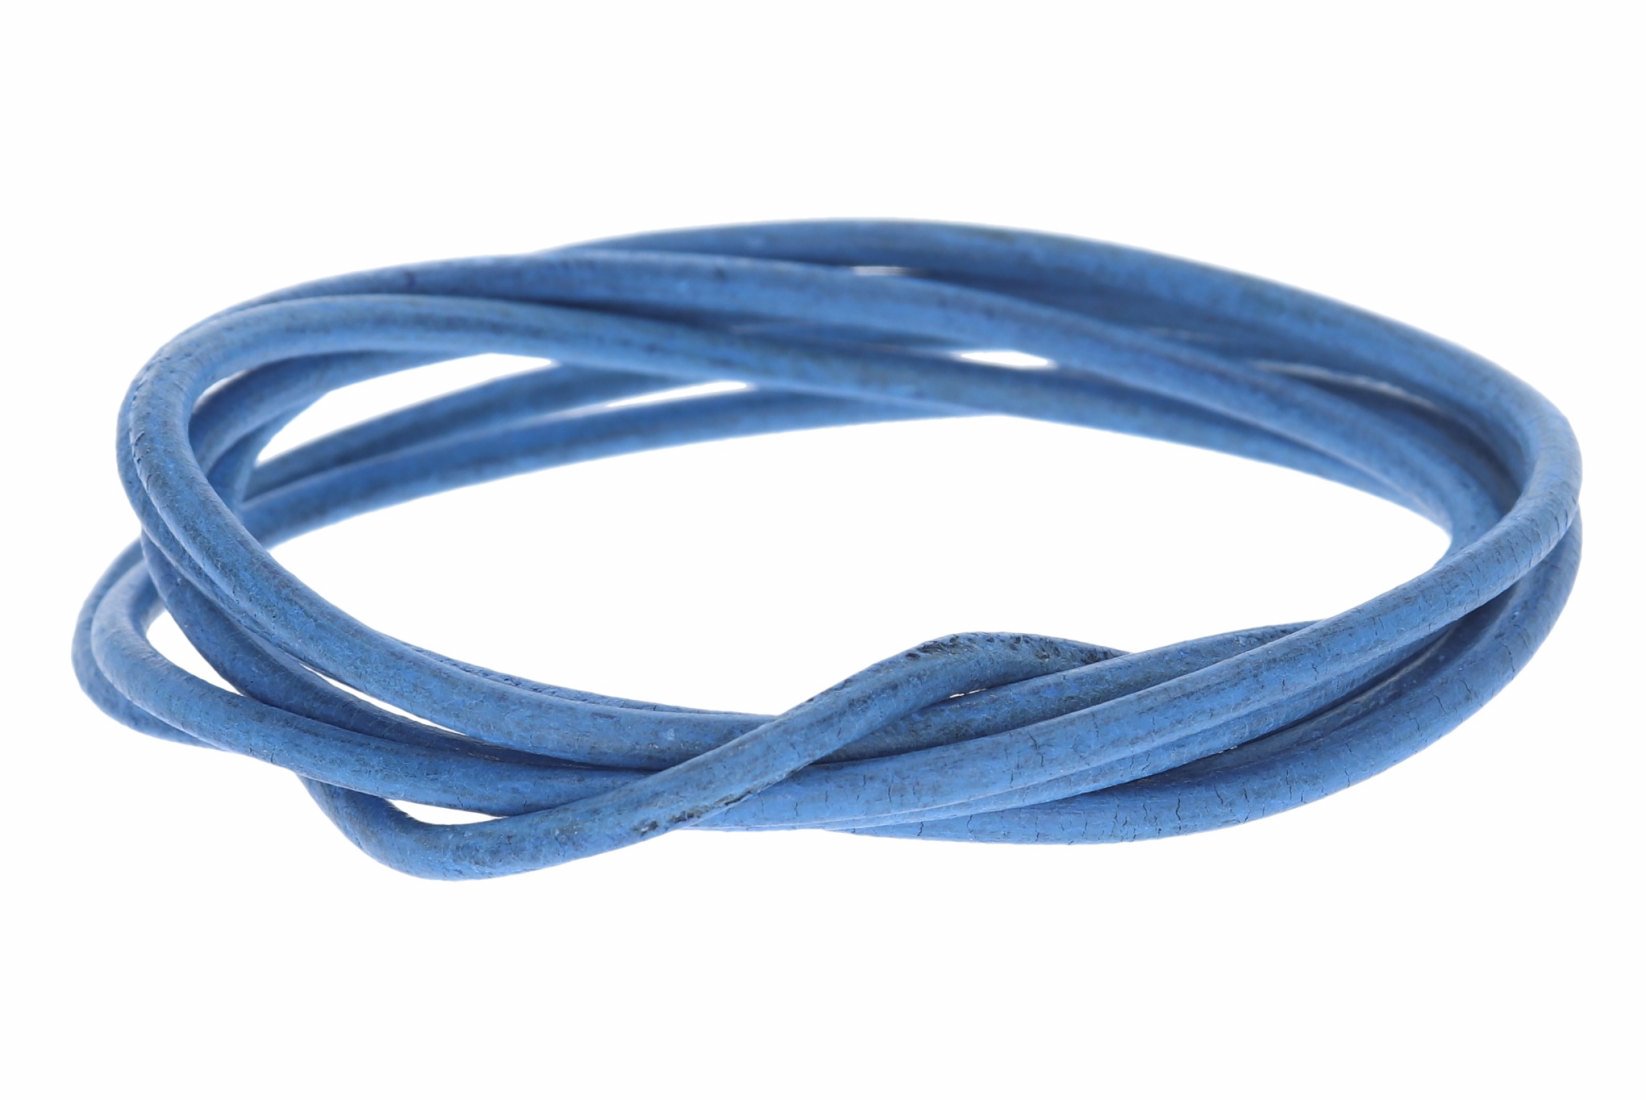 Lederband hell blau -  Lederbänder Lederriemen Lederschnur 2 mm Ø - 100cm L204